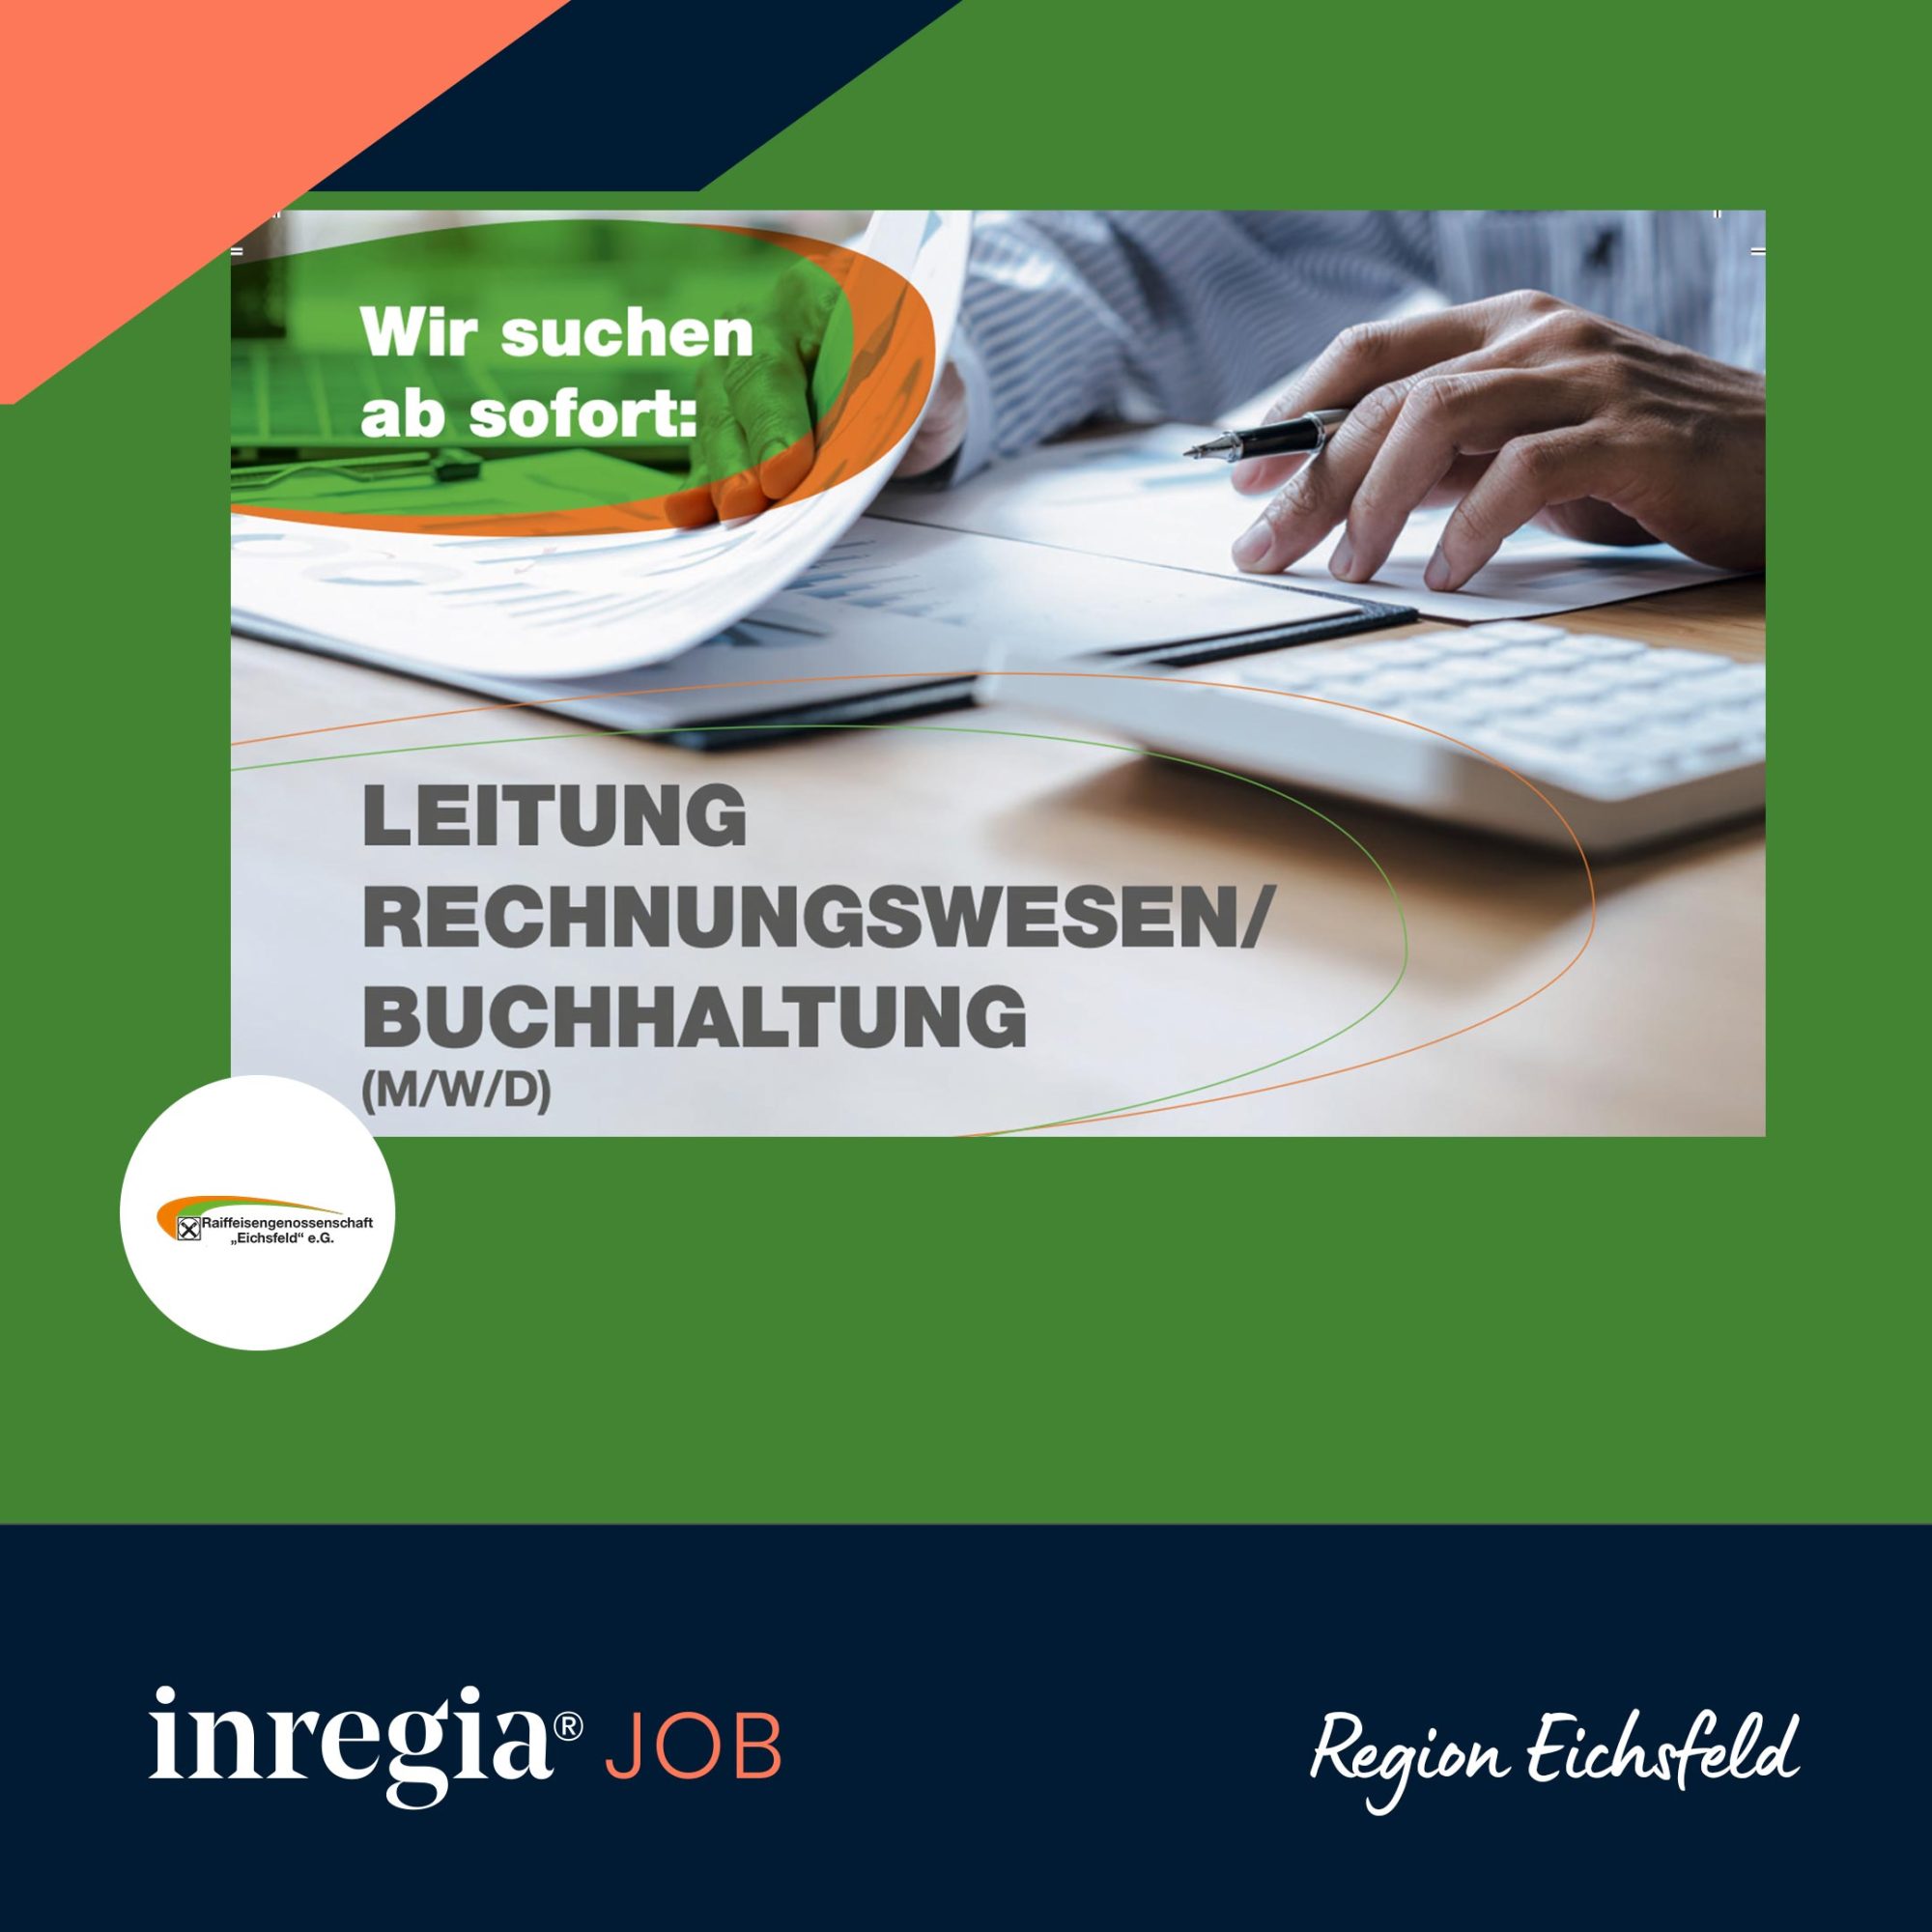 Raiffeisen Eichsfeld Jobangebot – Leitung Rechnungswesen / Buchhaltung